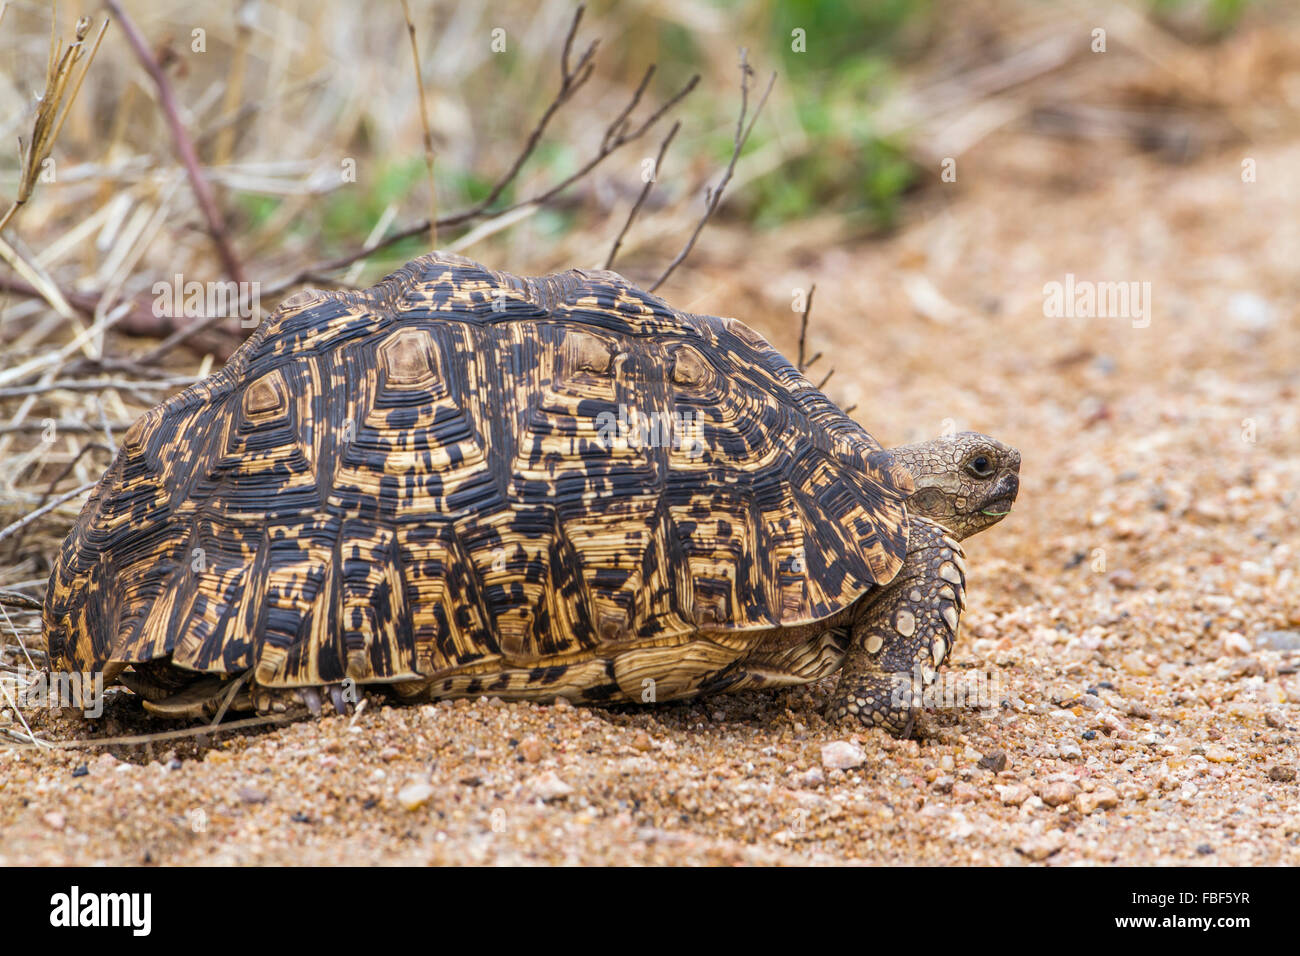 Espèce Stigmochelys pardalis tortue léopard famille des Testudinidae Banque D'Images